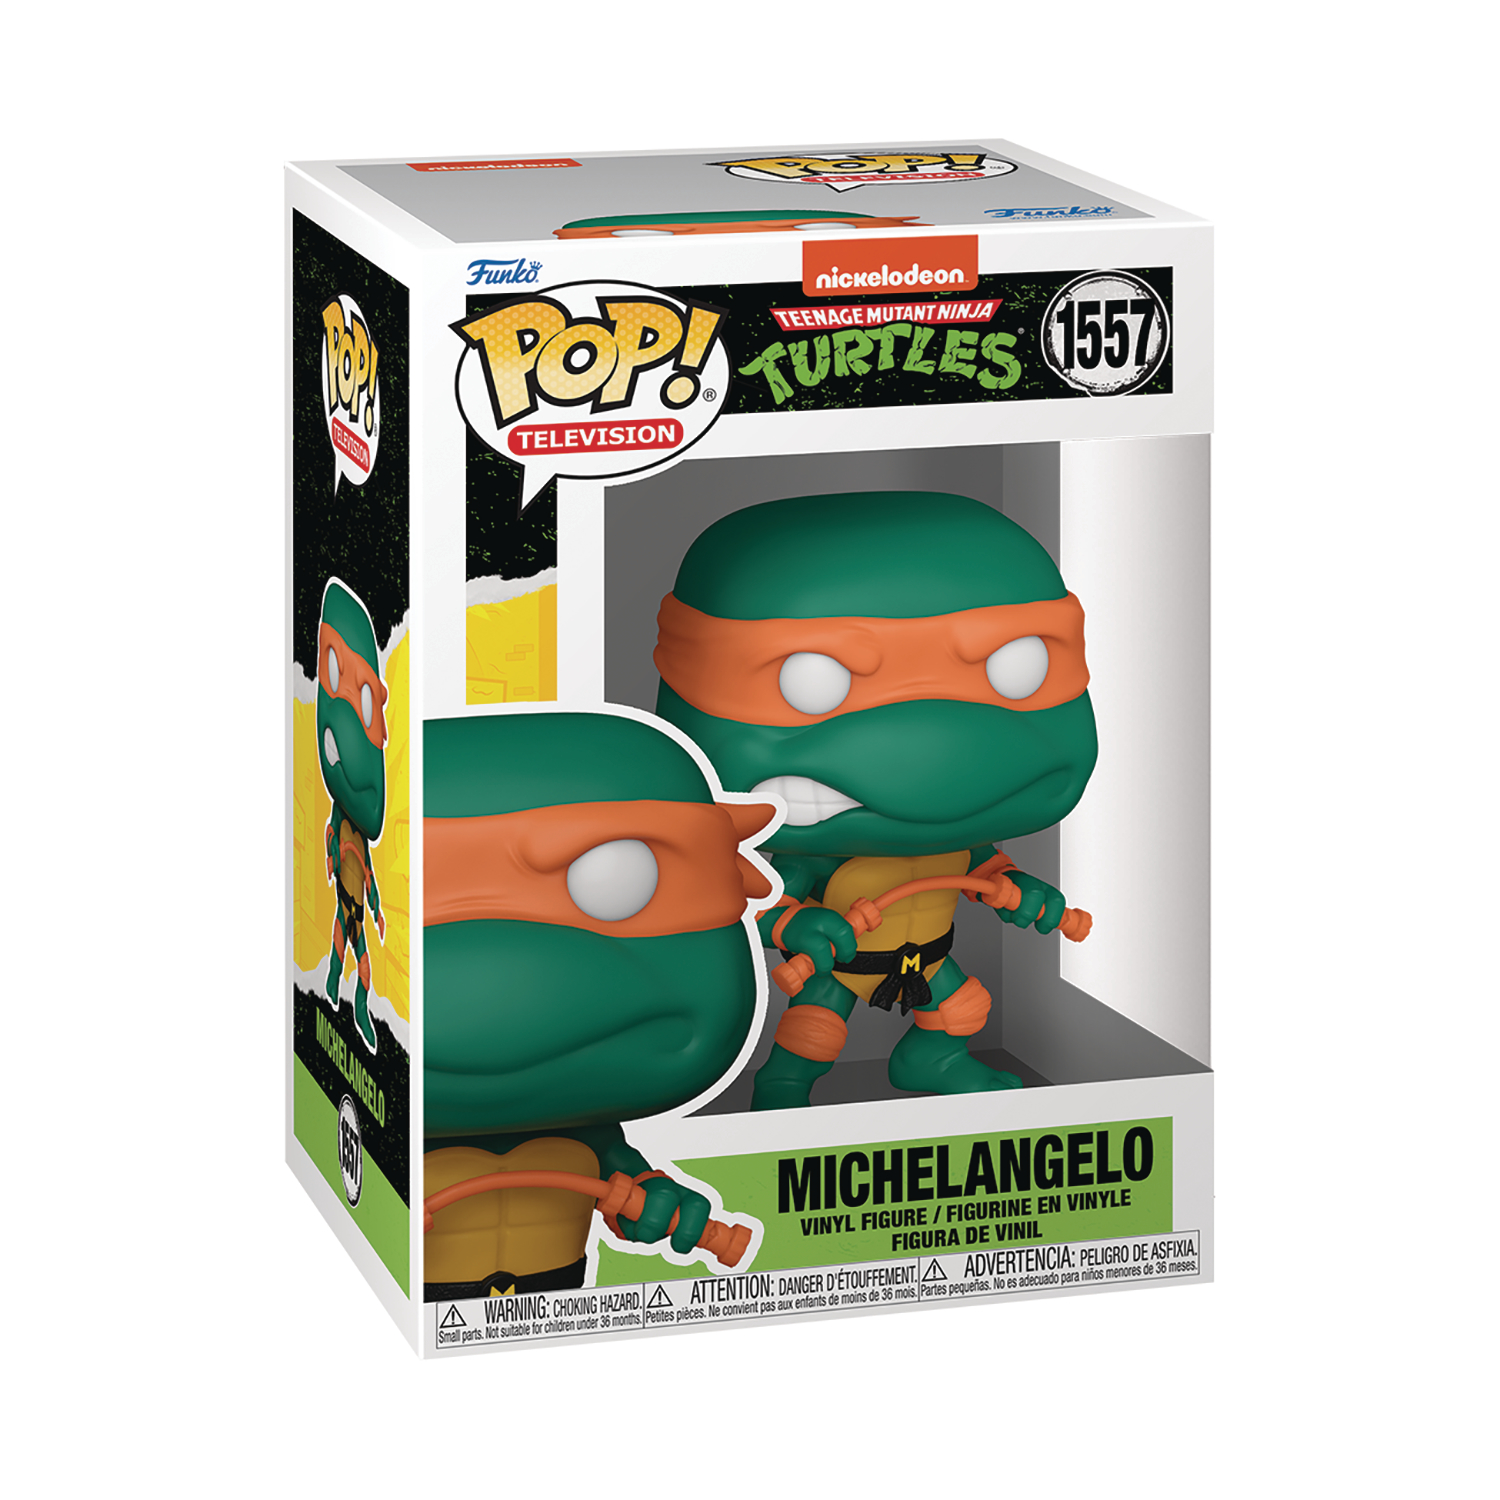 Teenage Mutant Ninja Turtles Michelangelo with Nunchucks Funko Pop! Vinyl Figure #1557